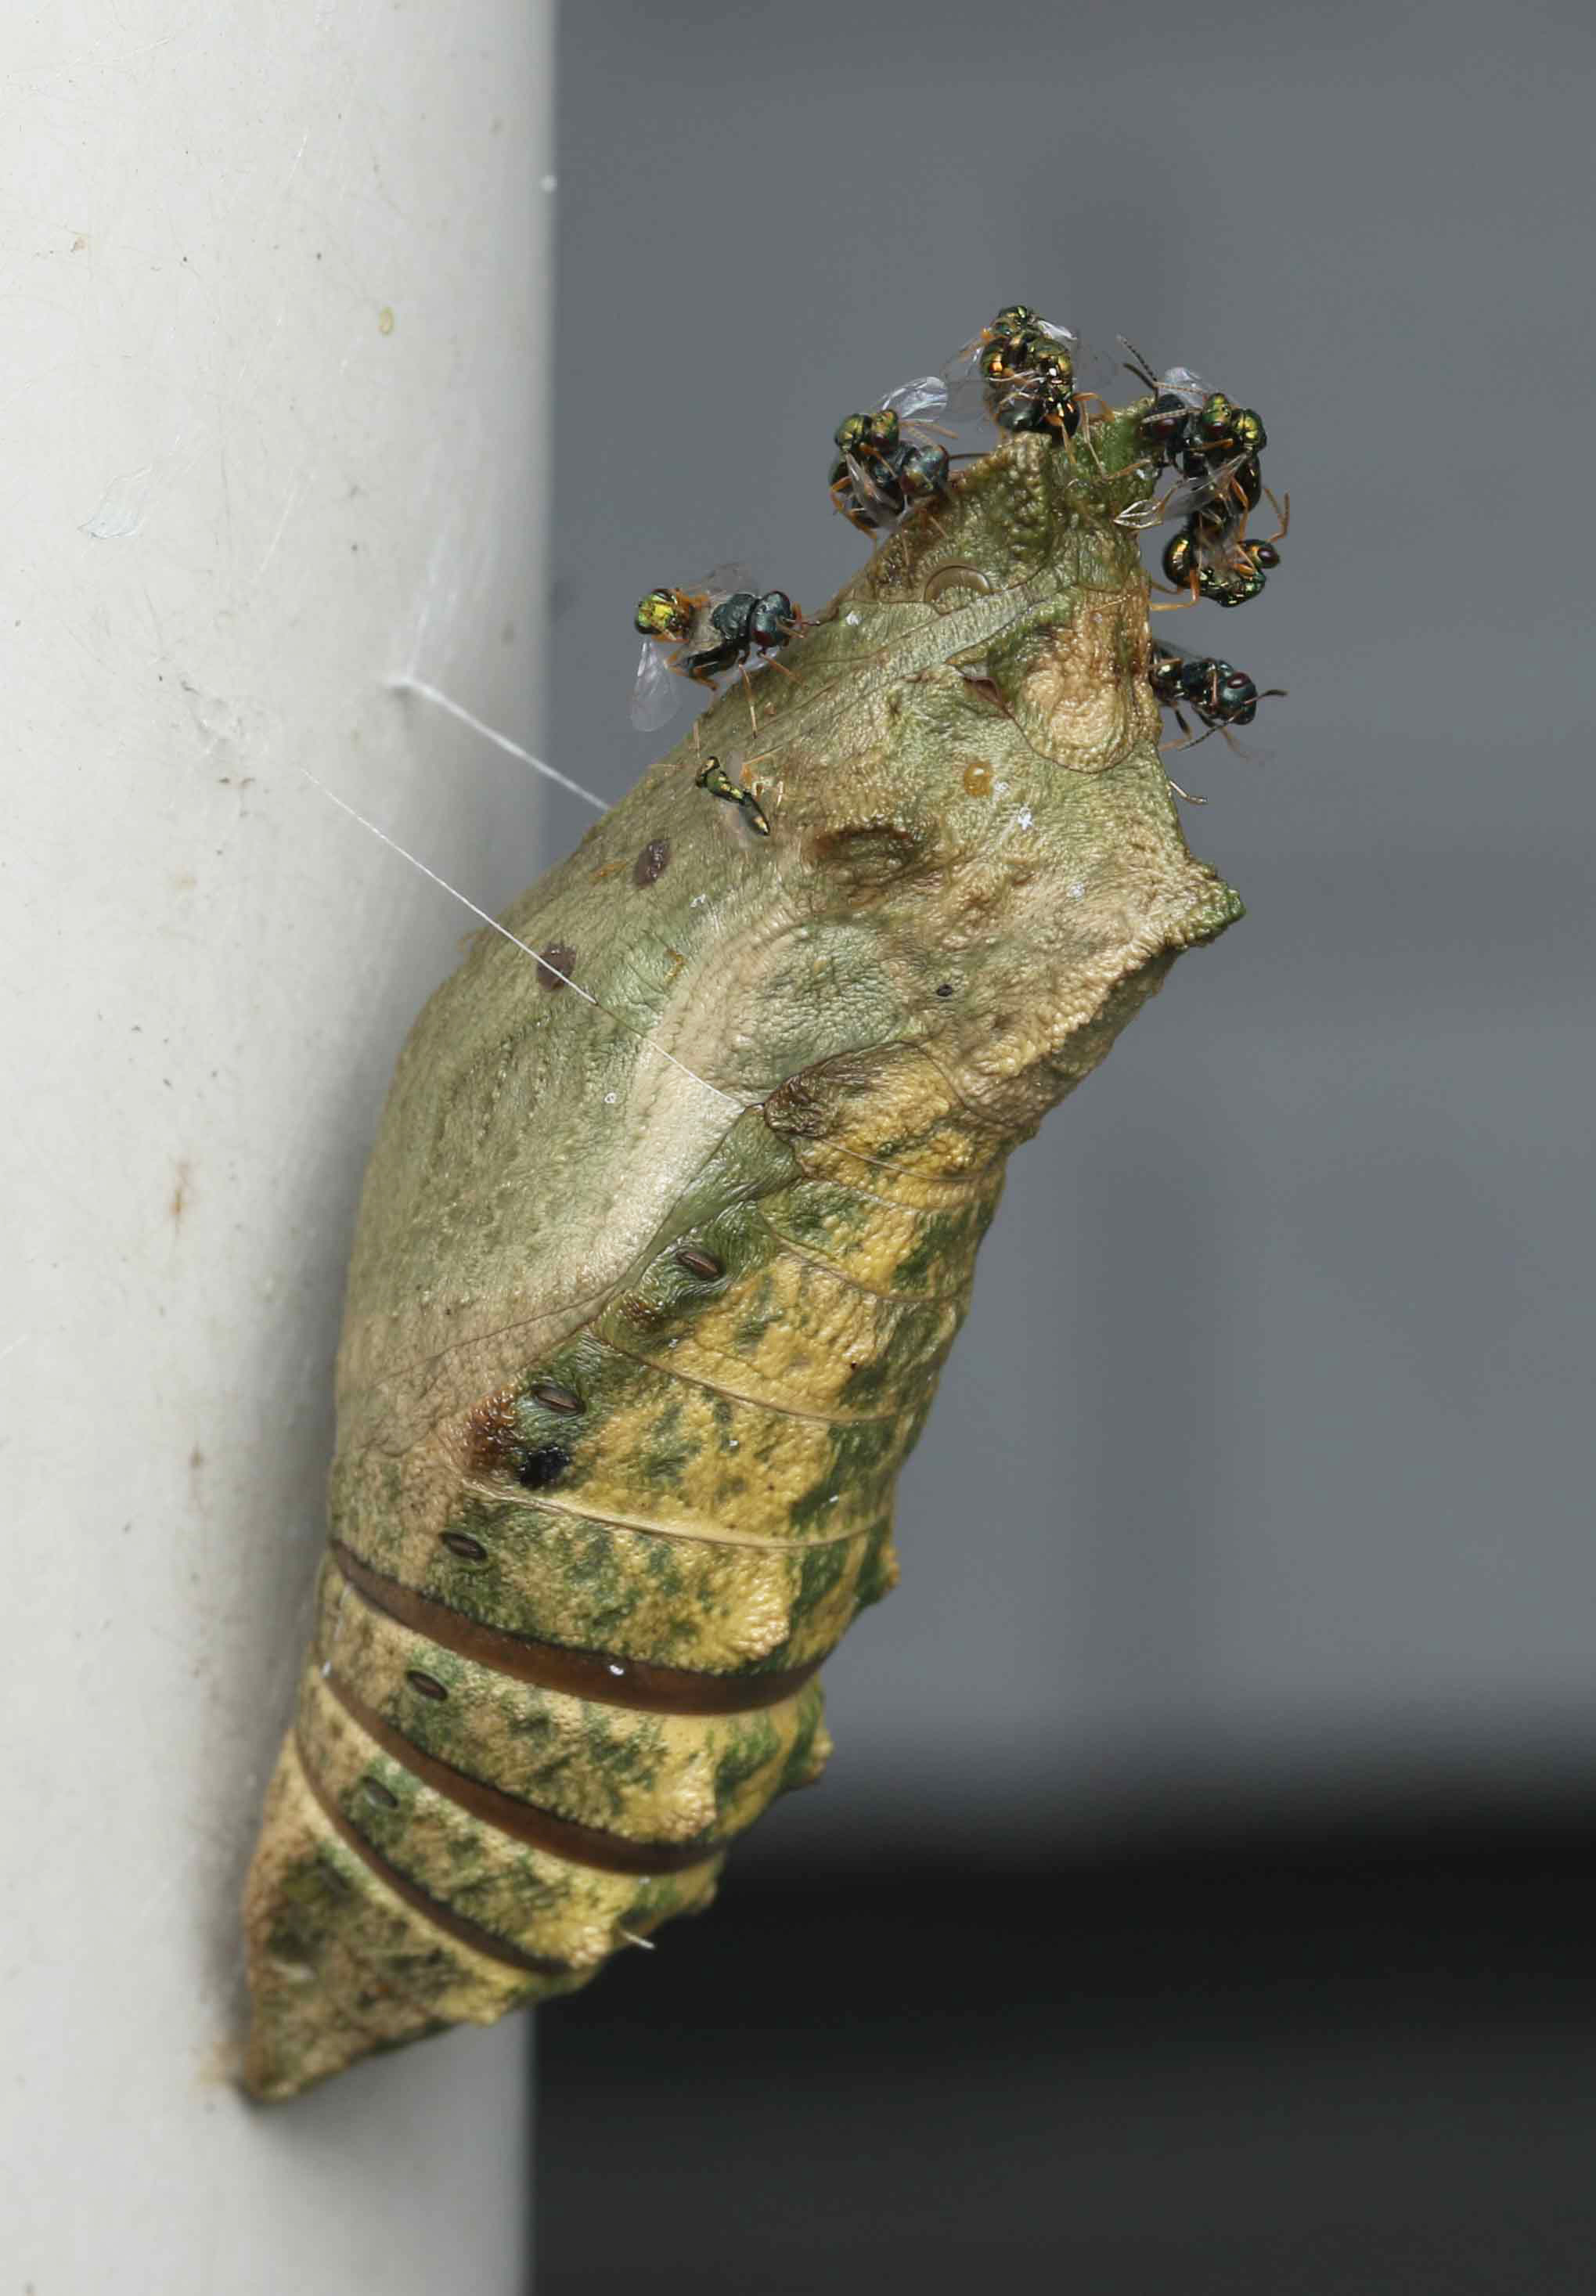 丸山宗利 Maruyama 大切に観察していたキアゲハの蛹からコガネコバチ科の寄生蜂が大量に羽化 T Co N2dv7xhljm Twitter